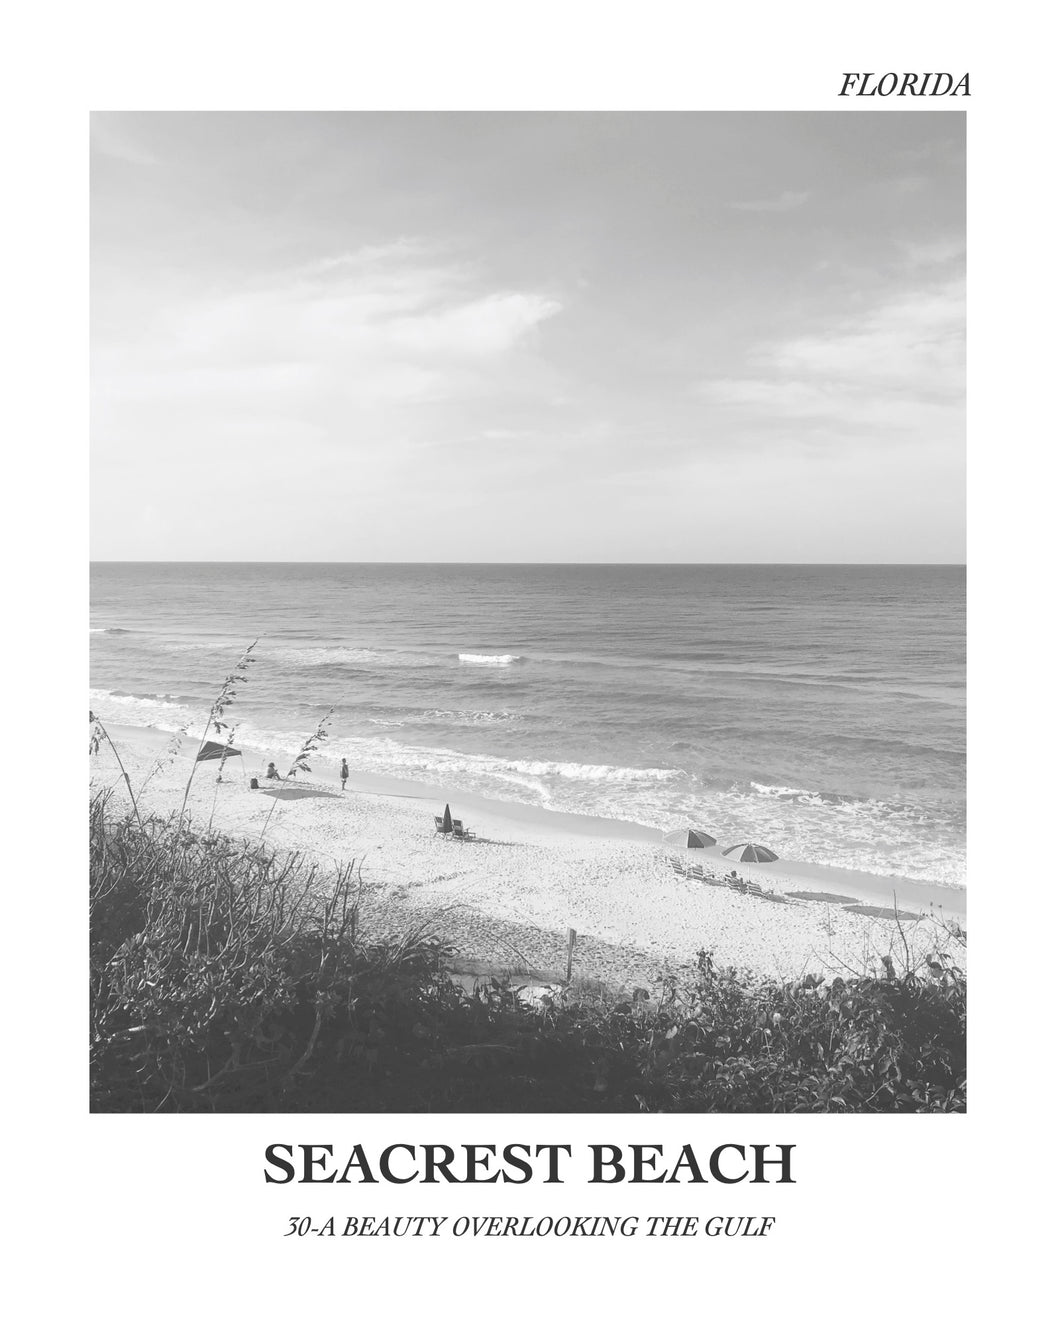 Seacrest Beach